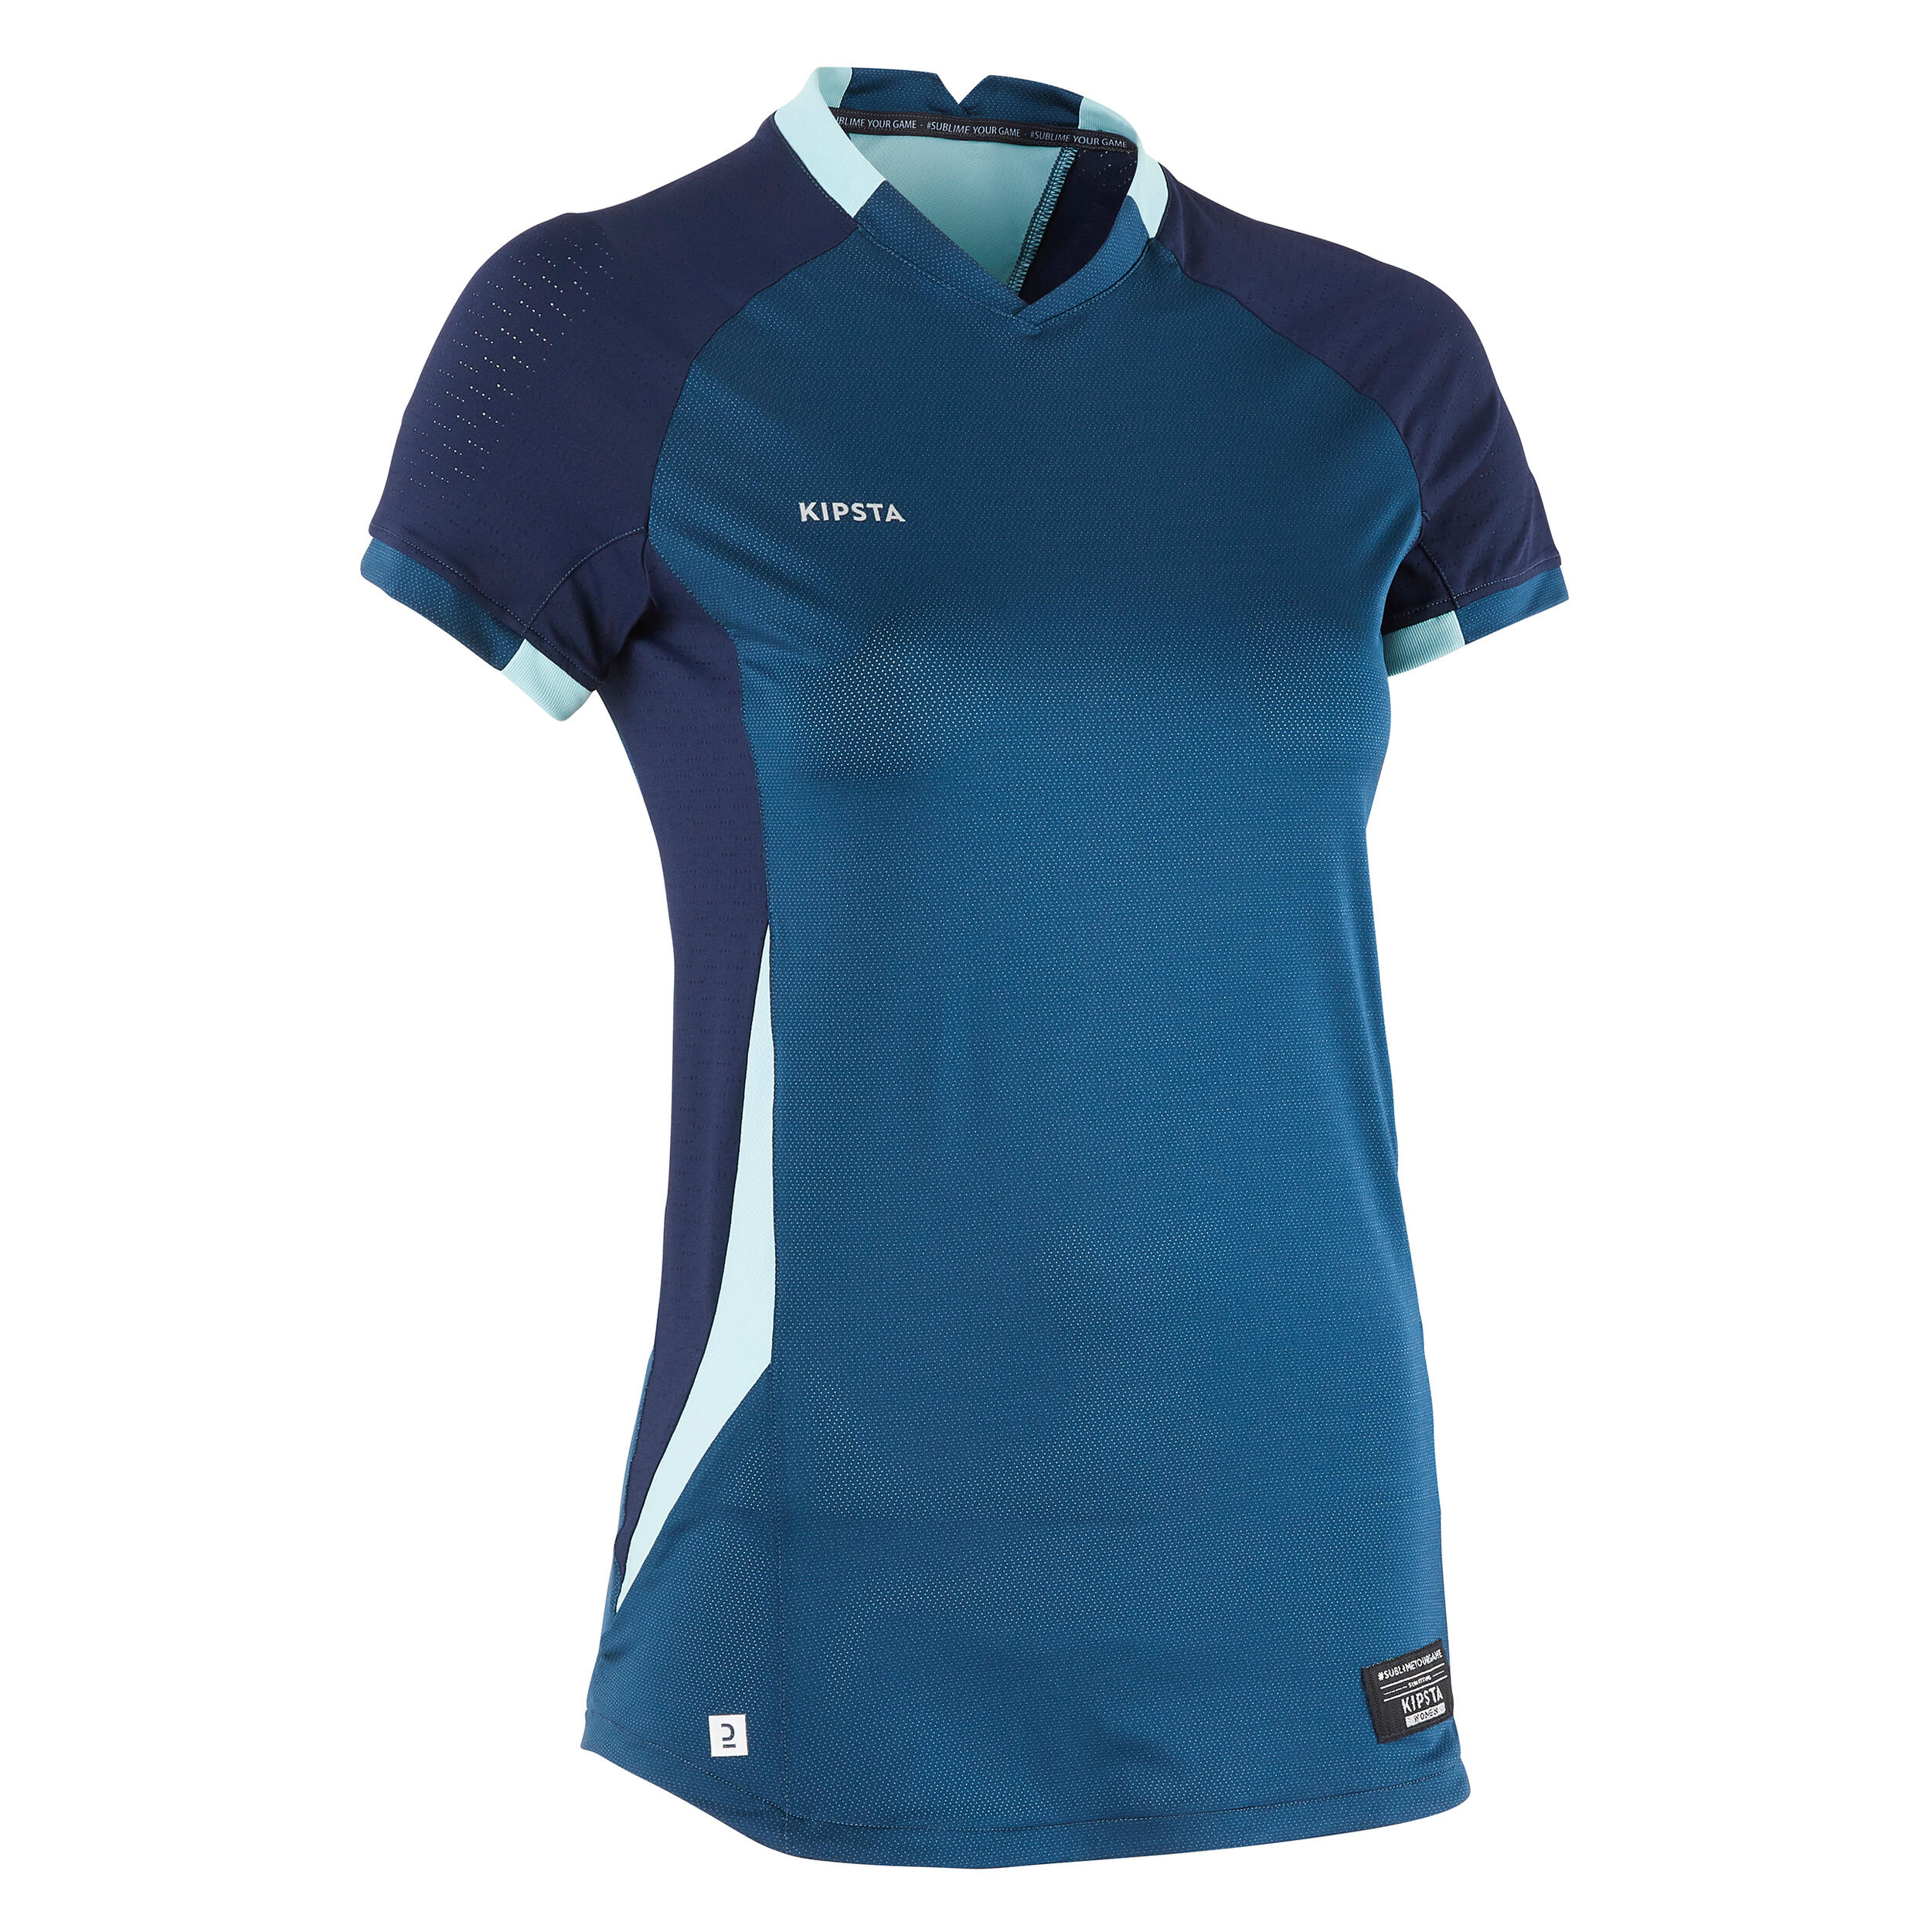 Women's Short-Sleeved Slim Cut Football Shirt - Blue 10/10